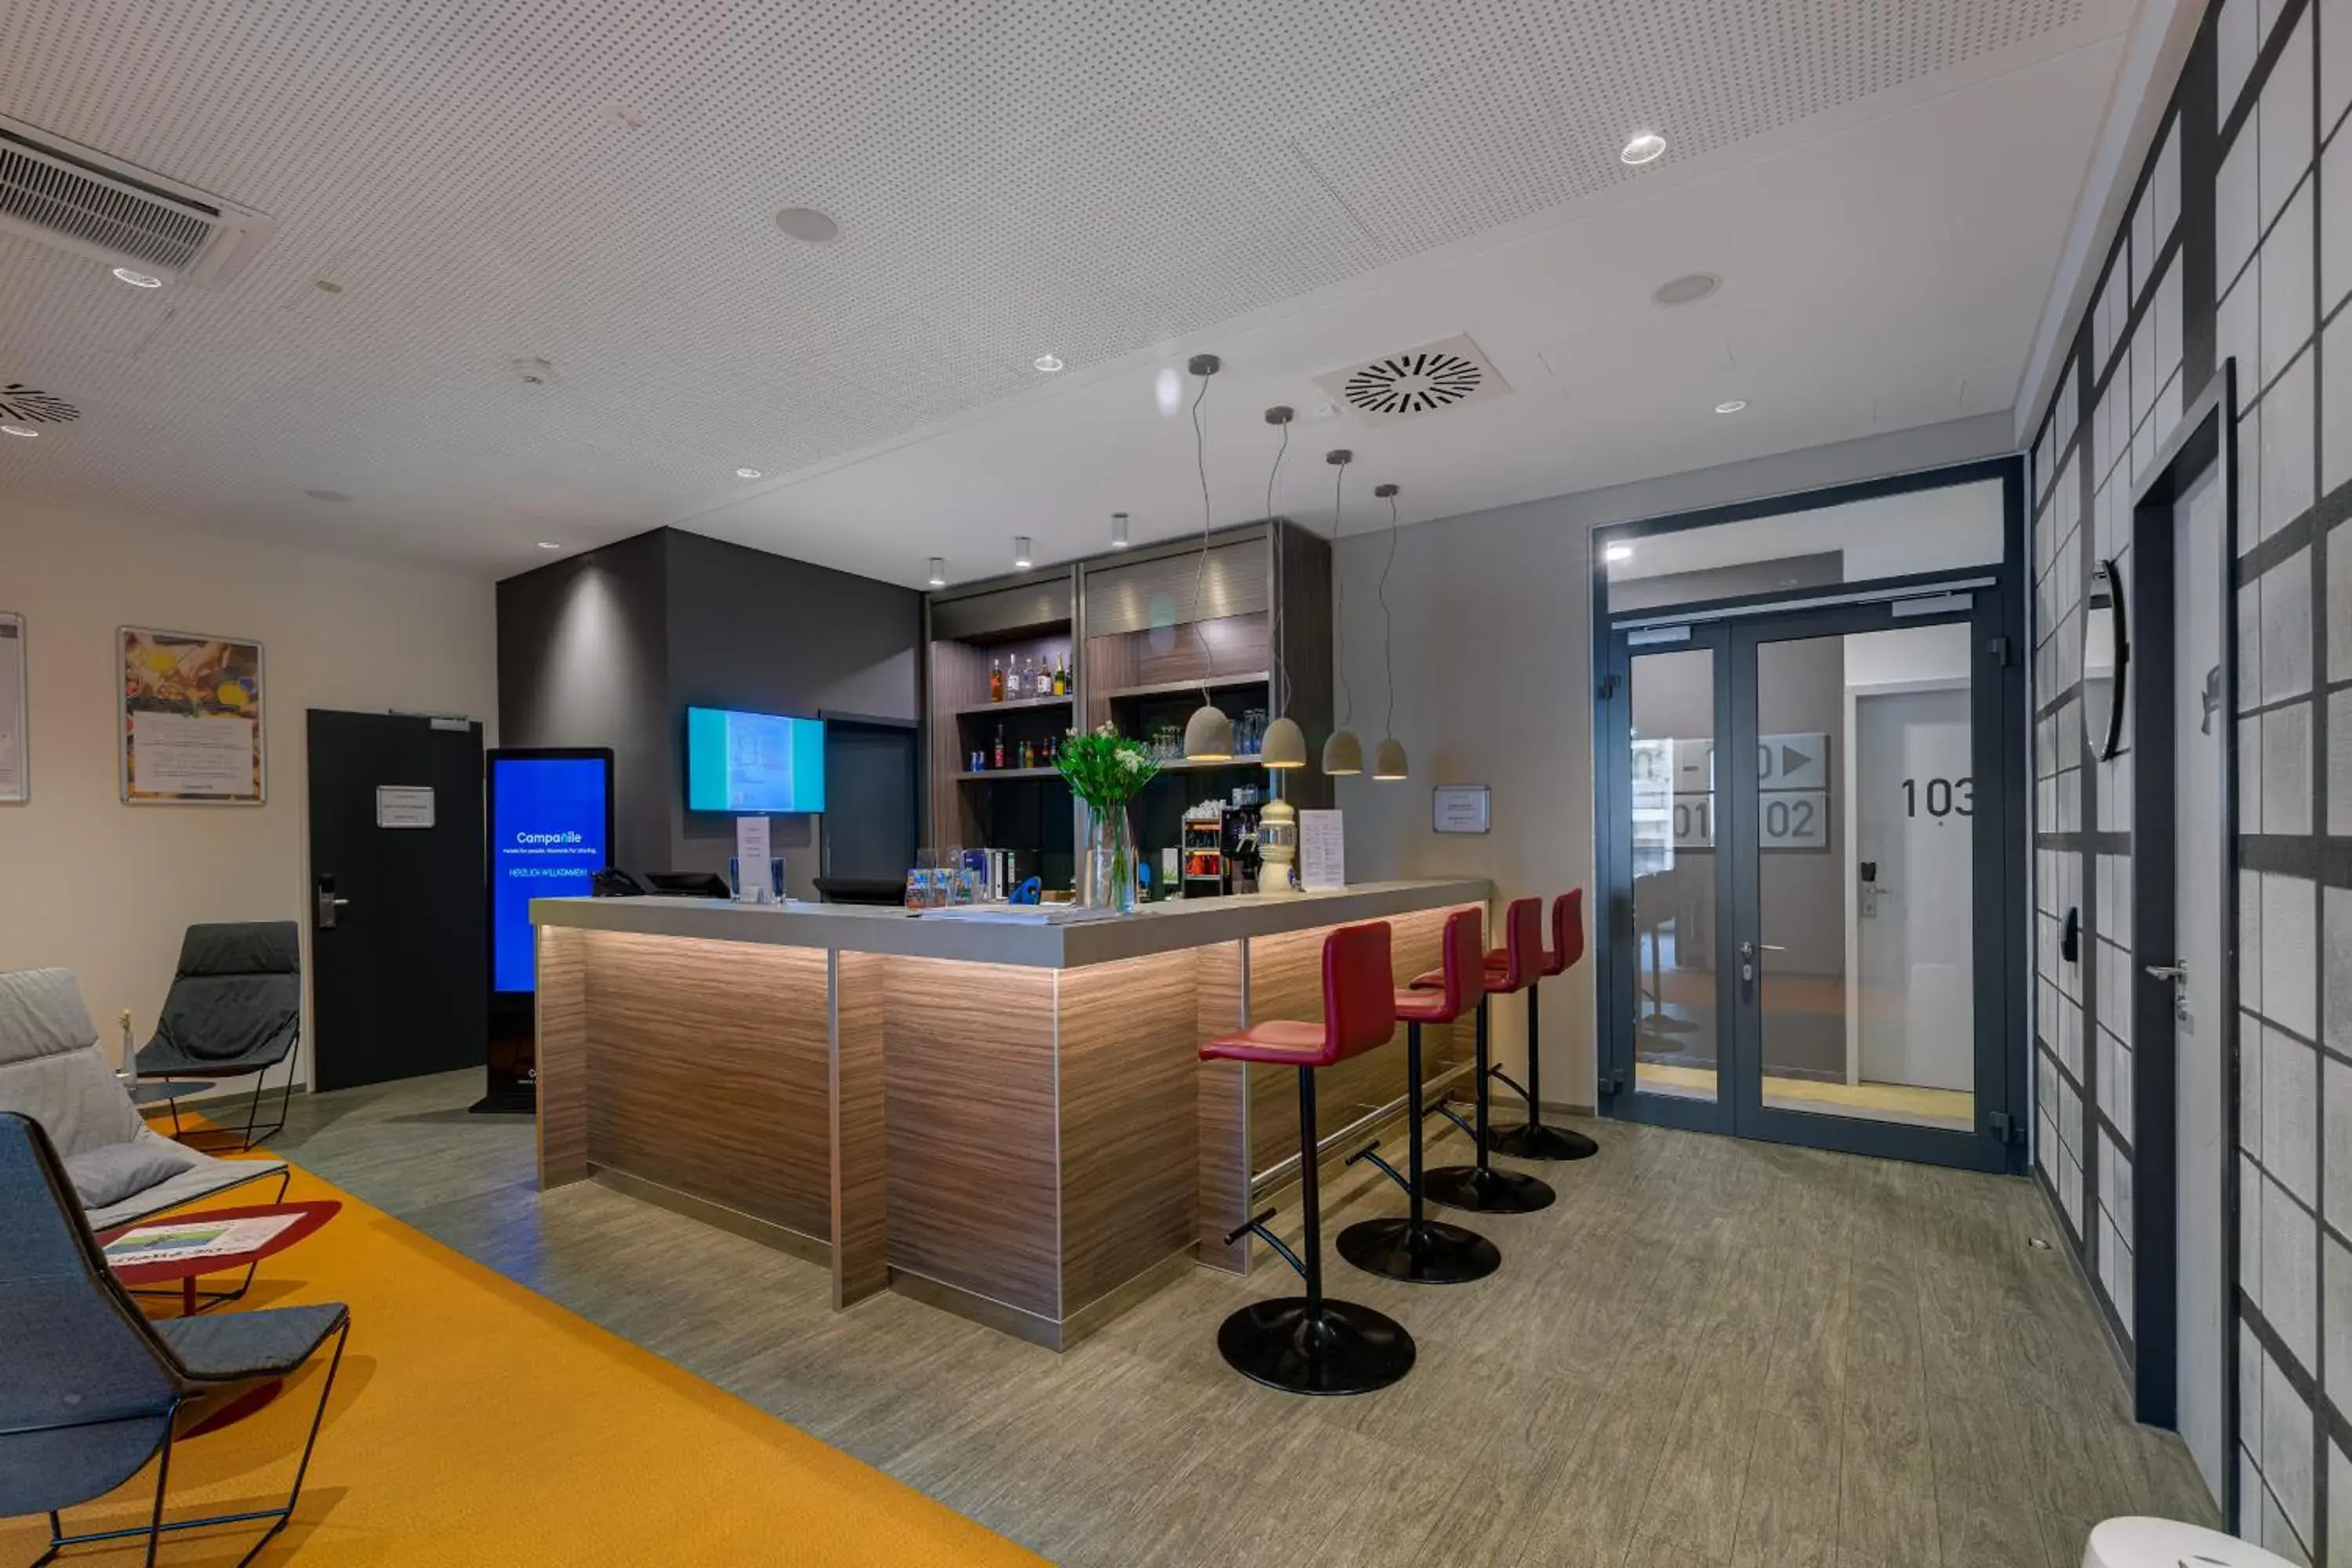 Lobby or reception, Lobby/Reception in 7 Days Premium Hotel München-Sendling